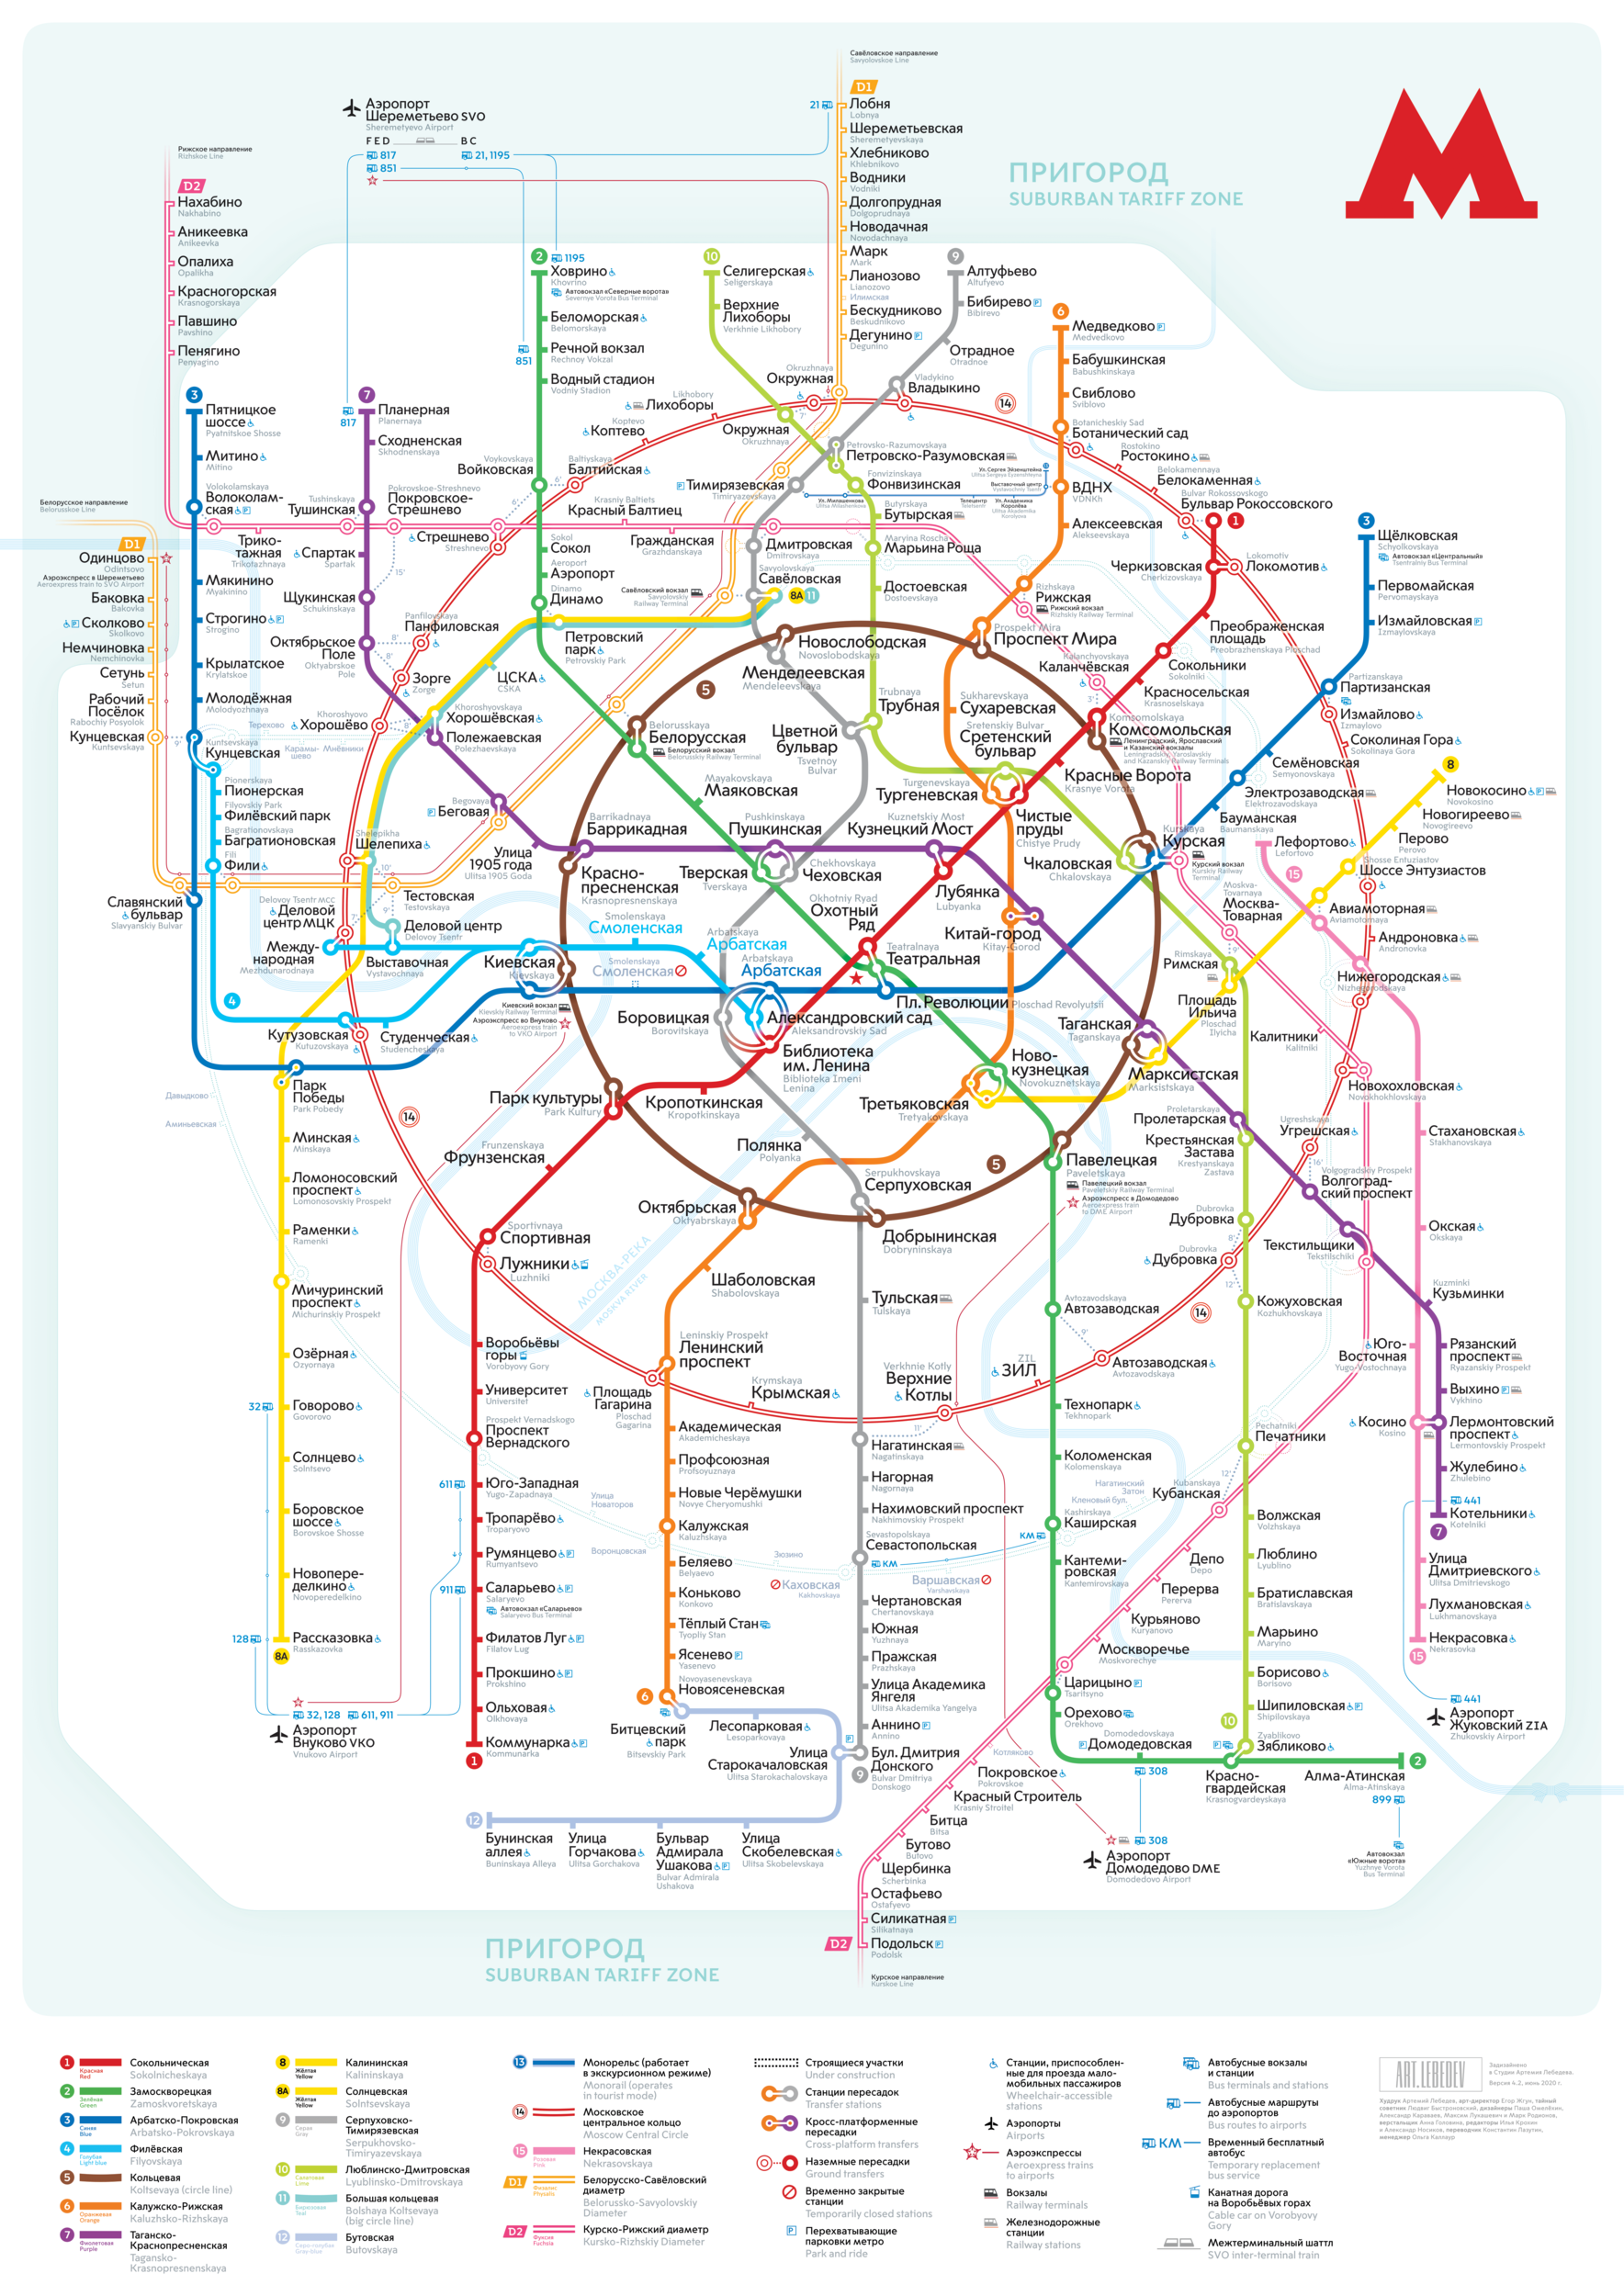 Moscou — Metro — Maps